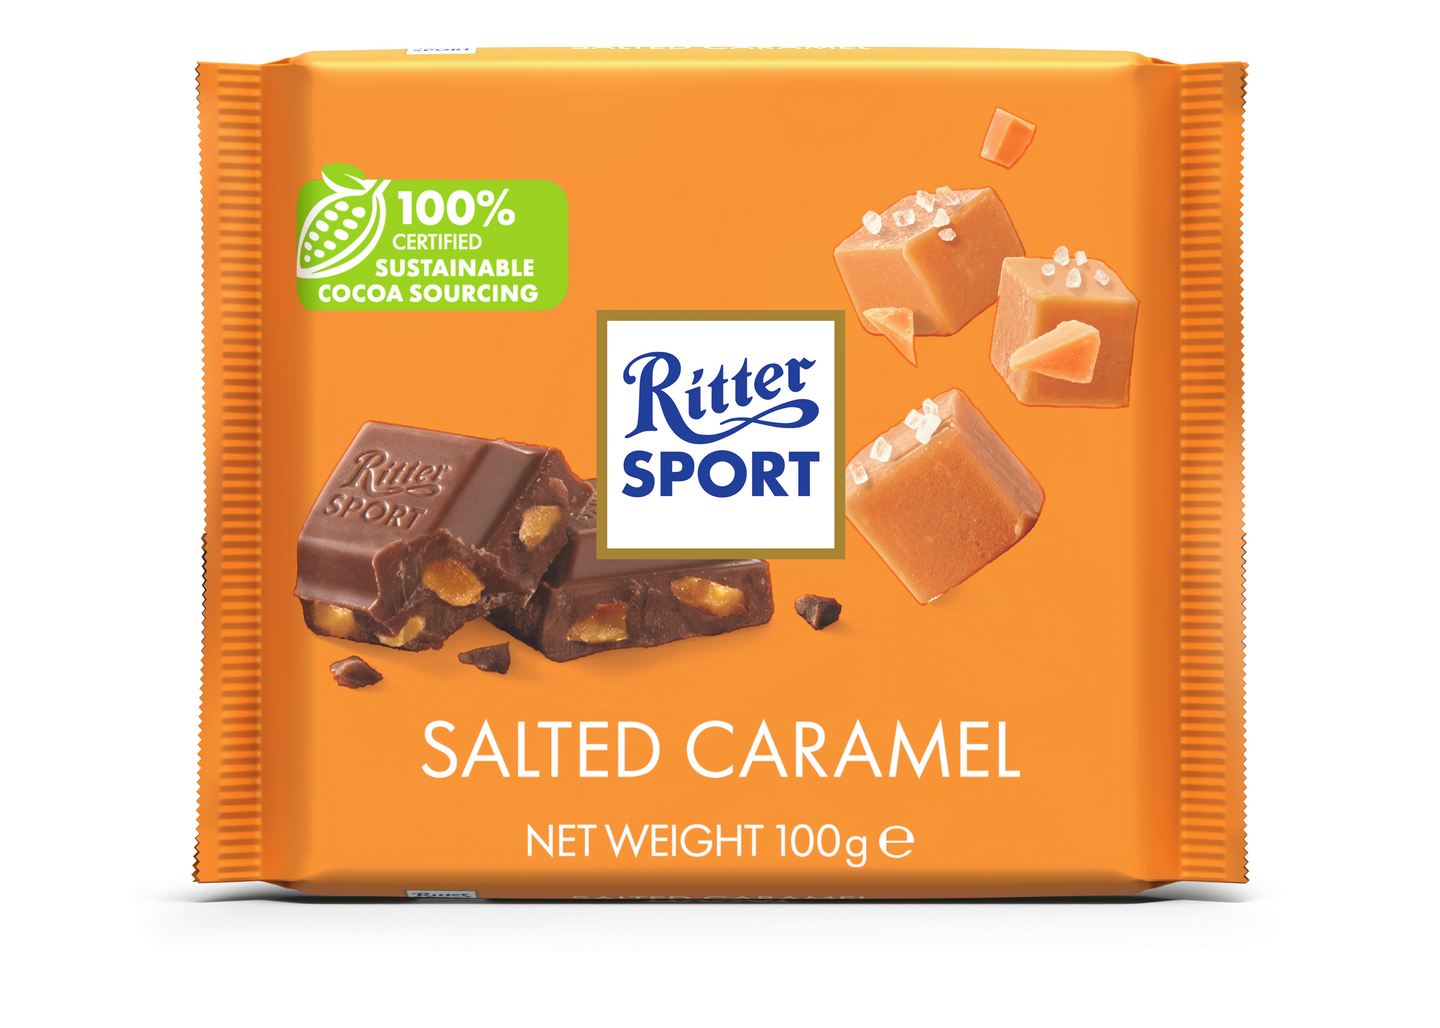 Ritter Sport 100g salted caramel